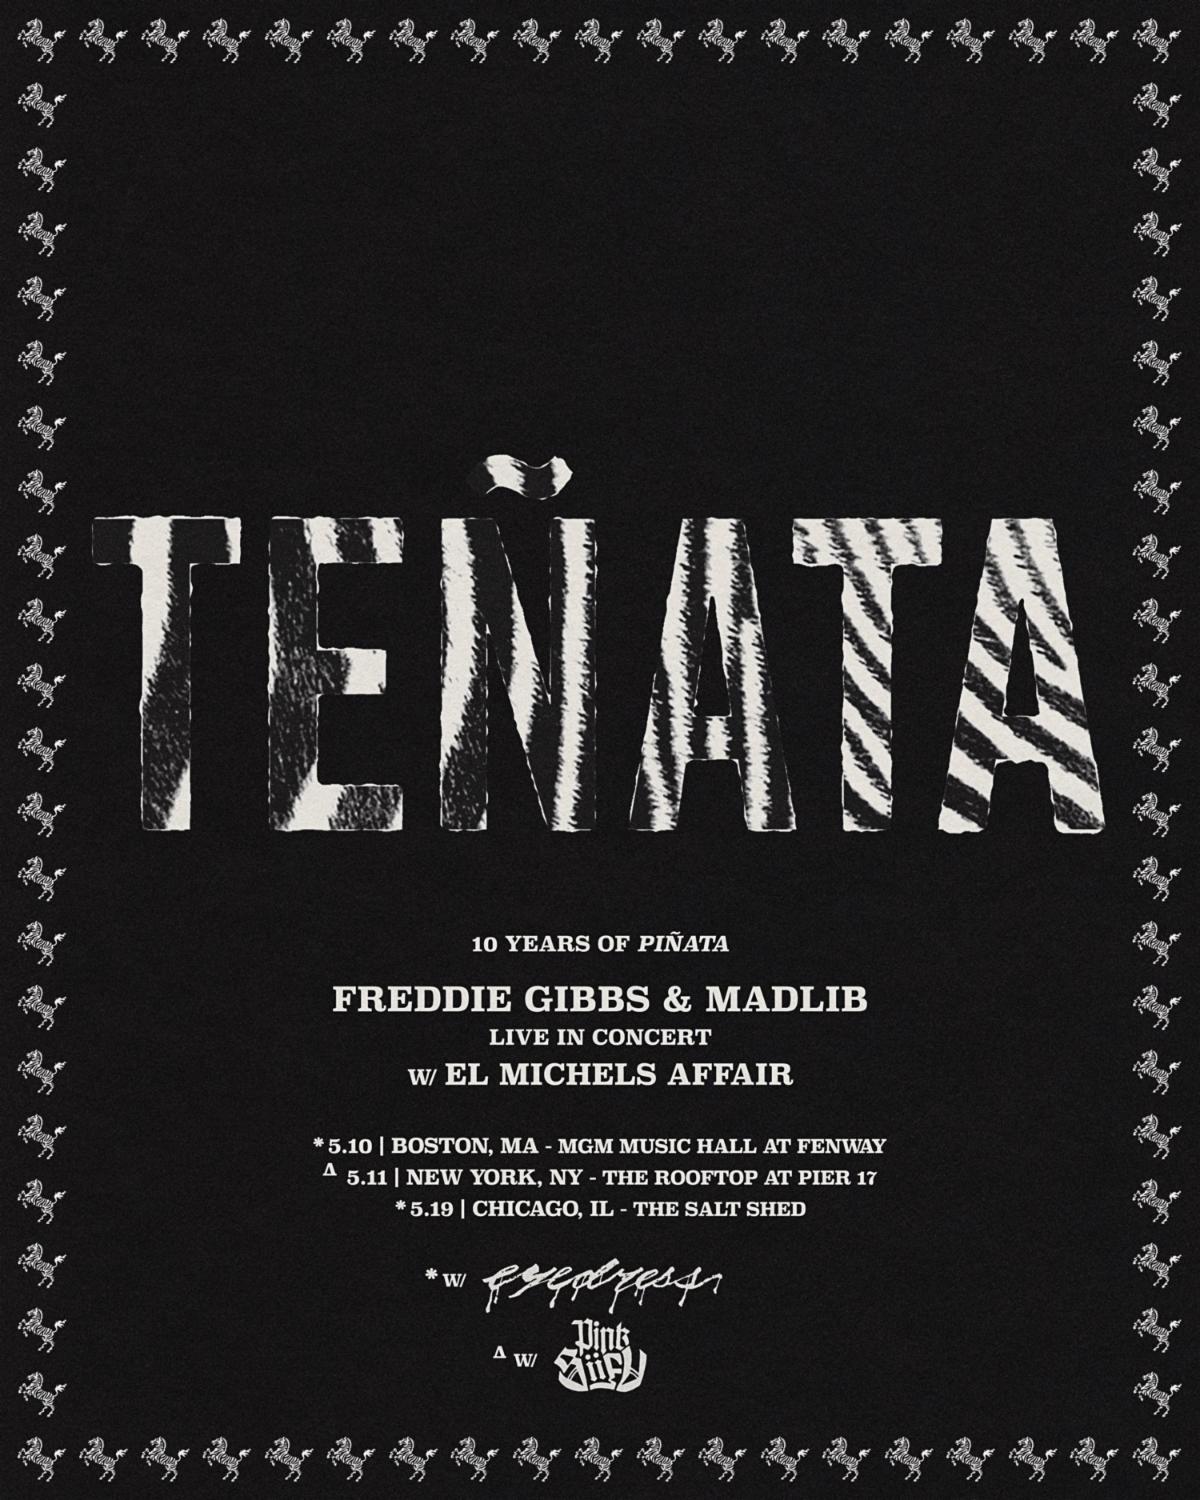 Freddie Gibbs and Madlib “Teñata” anniversary tour poster